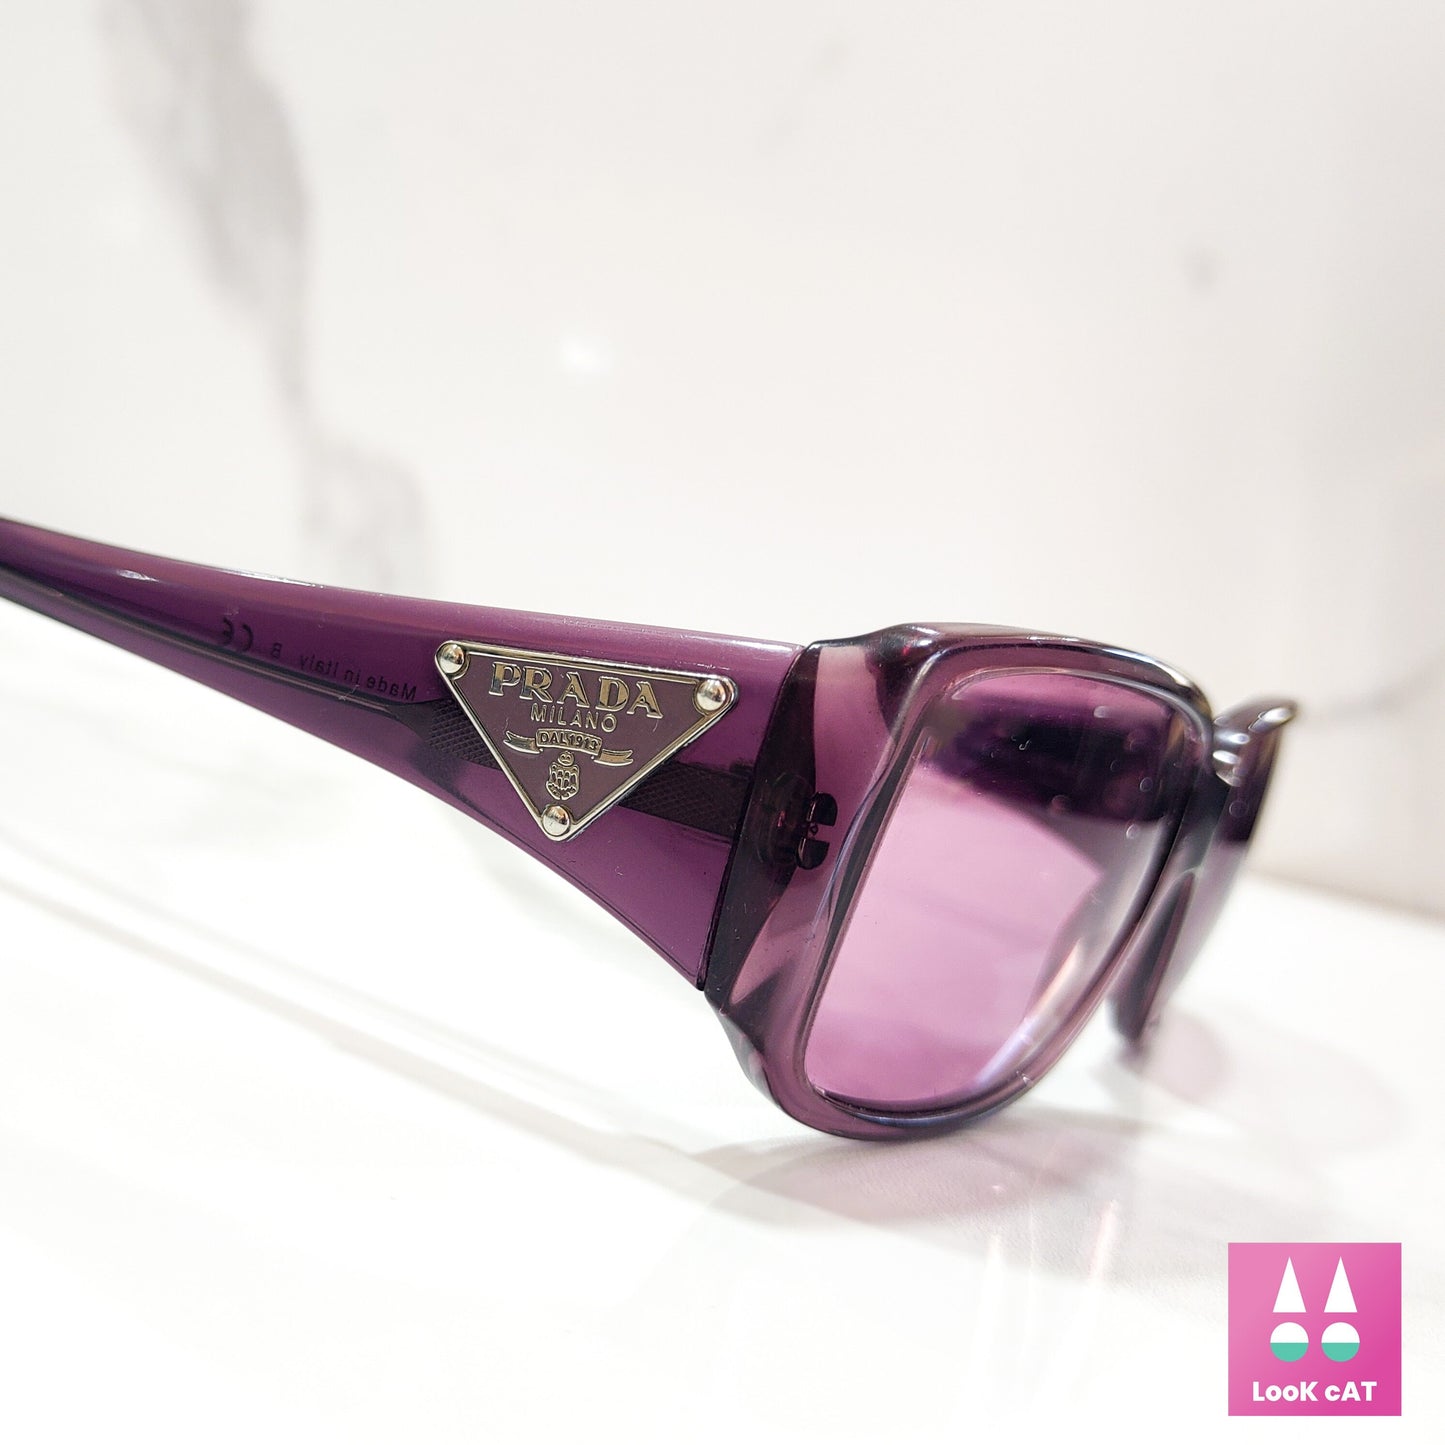 Occhiali da sole Prada modello SPR 16L lunette brille y2k shades